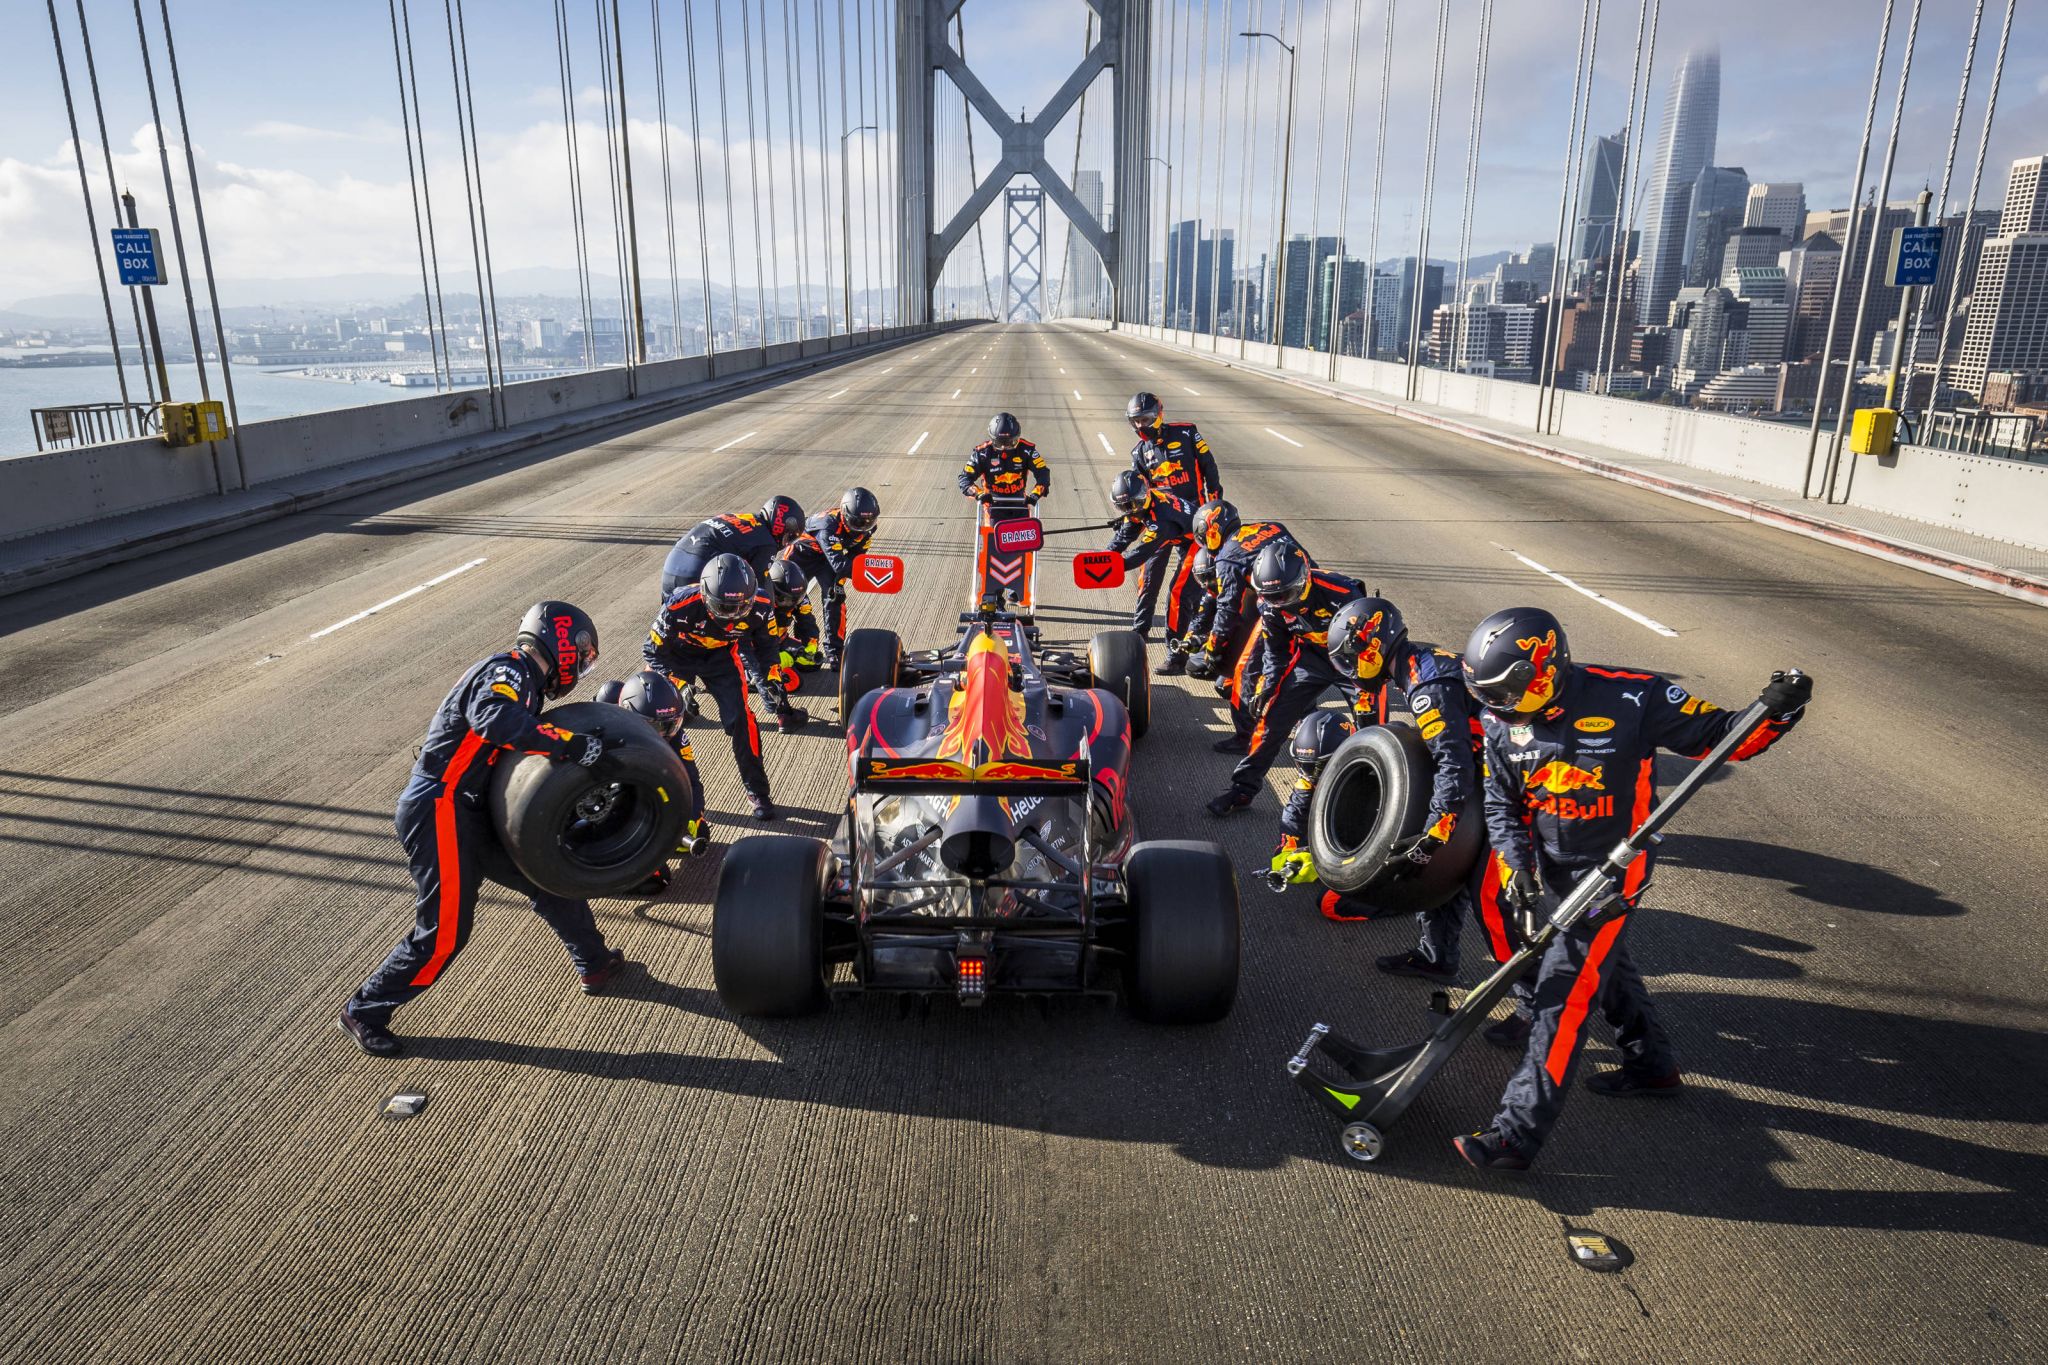 Formula 1 car races through SF, takes pit stop on Bay Bridge